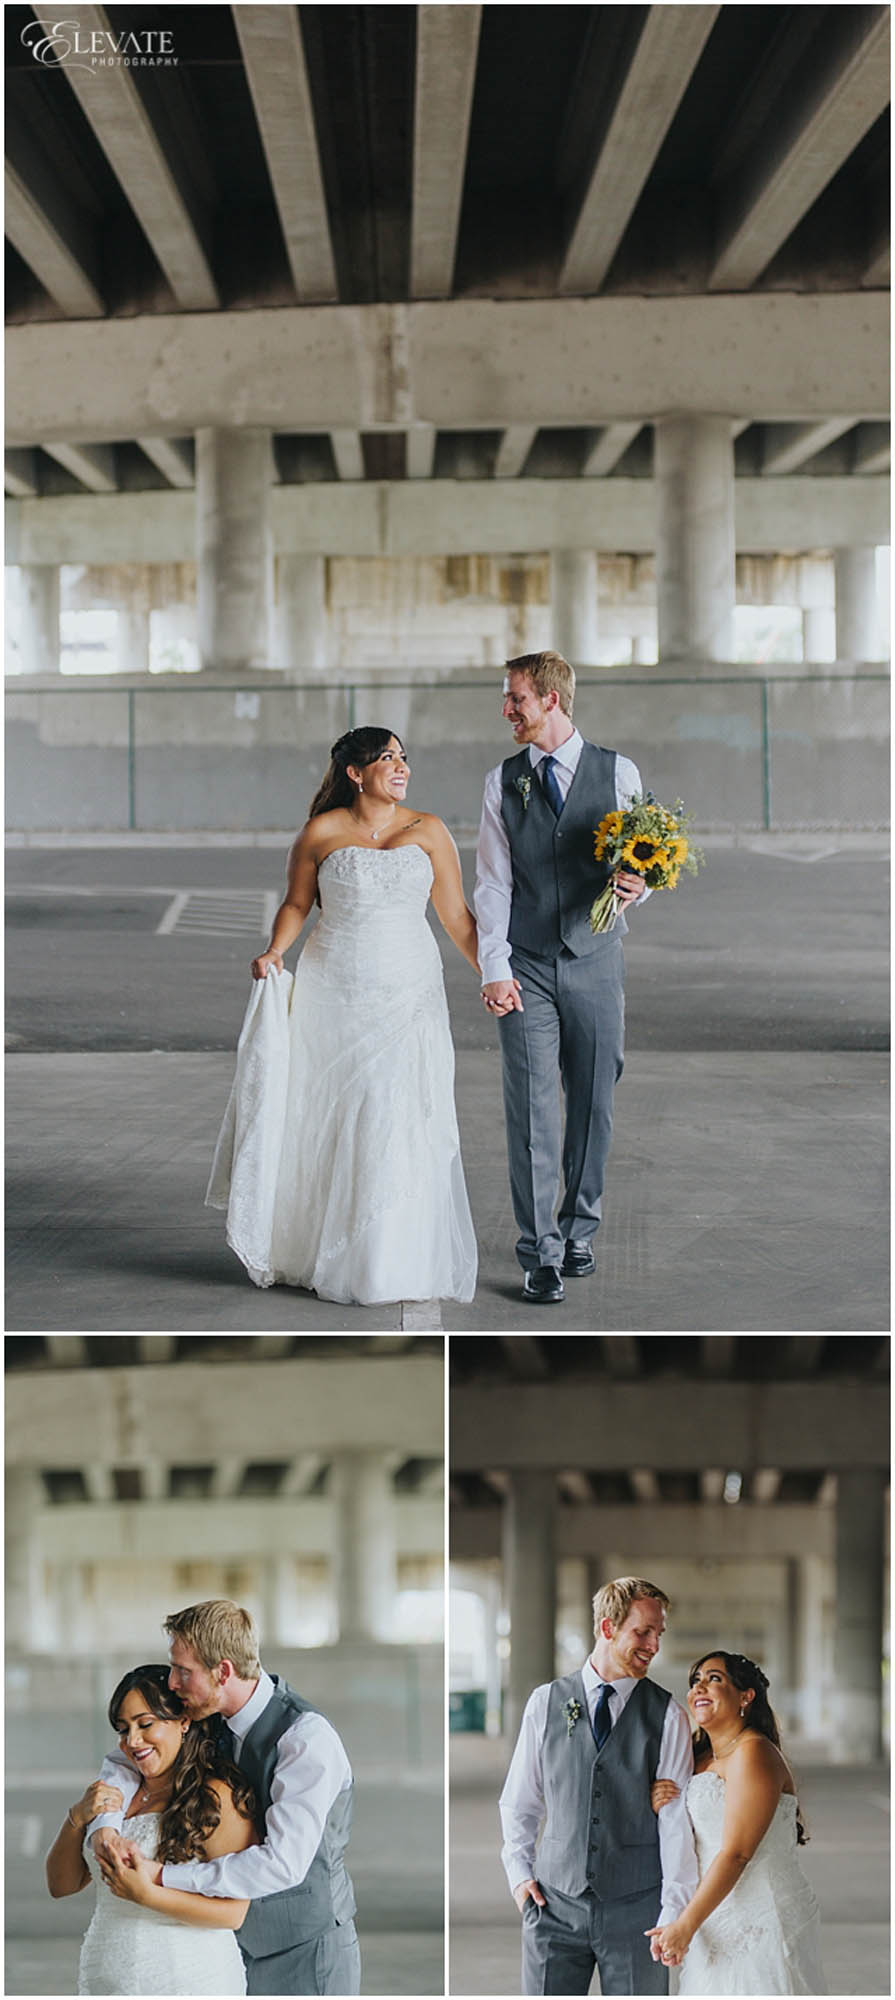 Kayla-Corey-Mile-High-Station-Wedding-Photos_0008